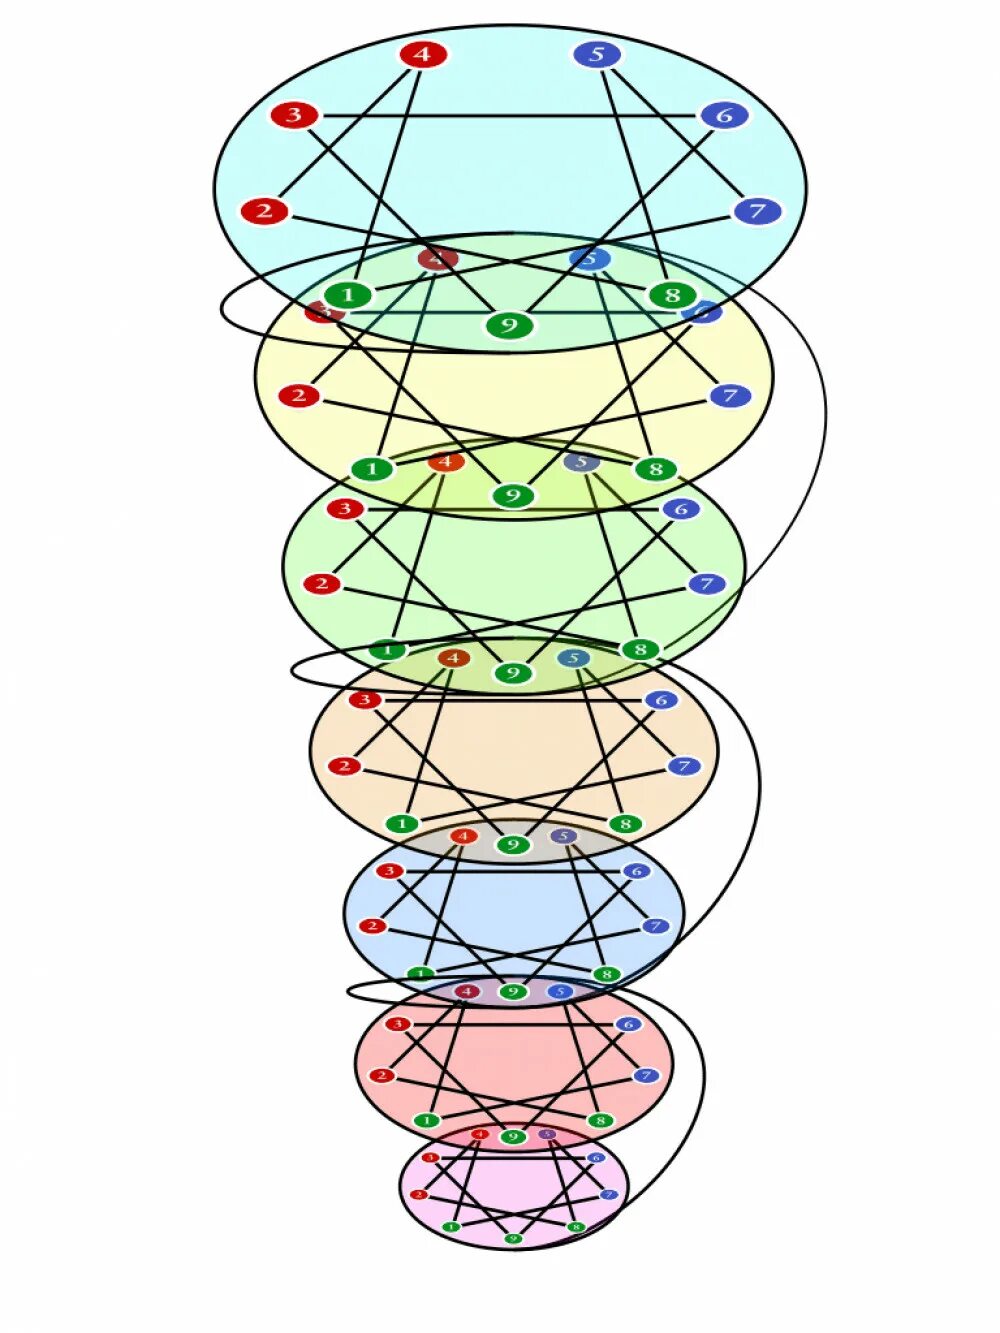 Автор спиральной динамики. Спиральная динамика Грейвза. Спираль динамики. Теория спиральной динамики. Модель спиральной динамики.